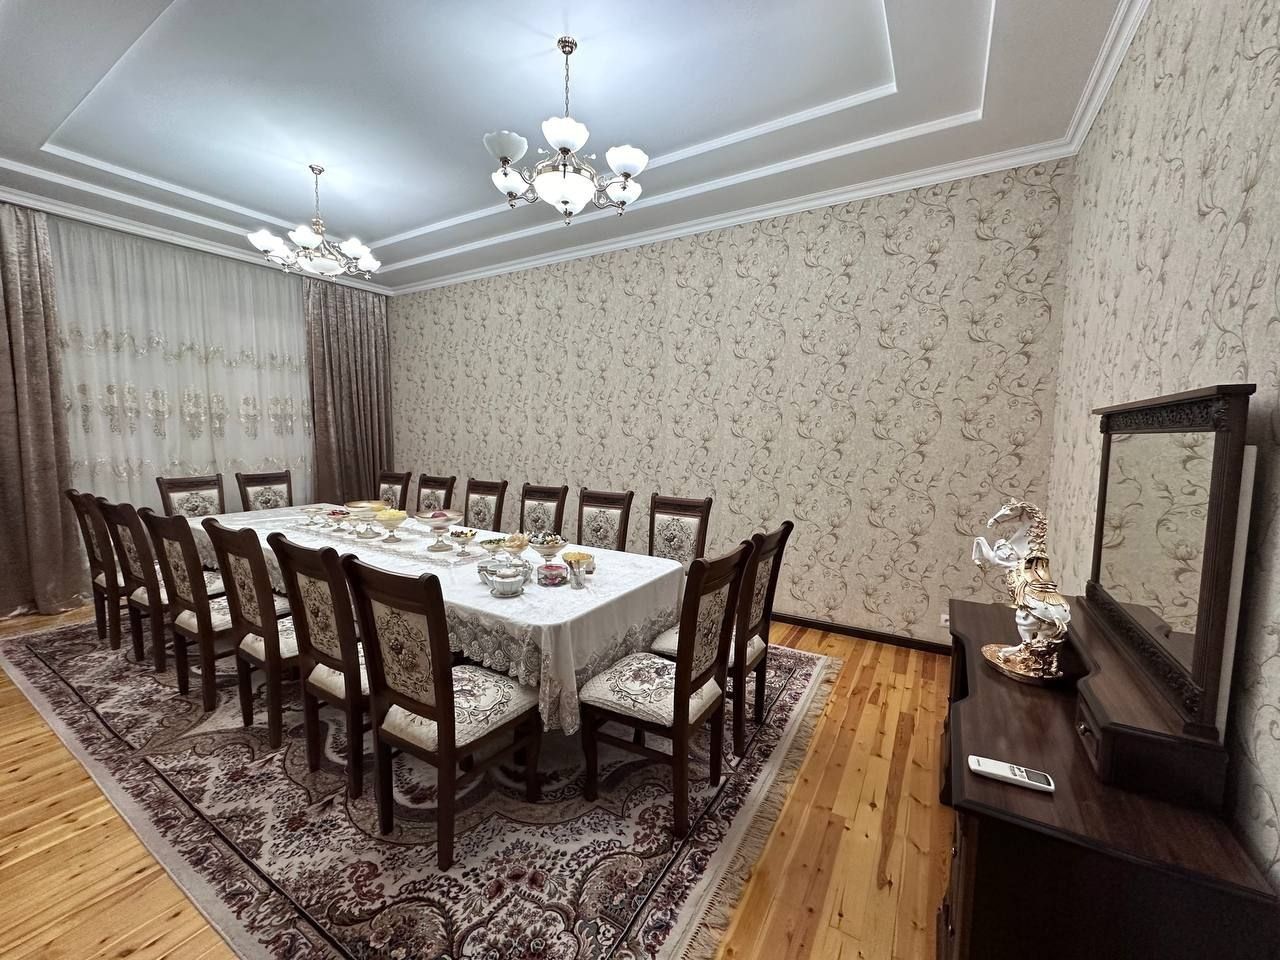 Продаётся дом 3,68 соток по ул. Ц. Луначарского